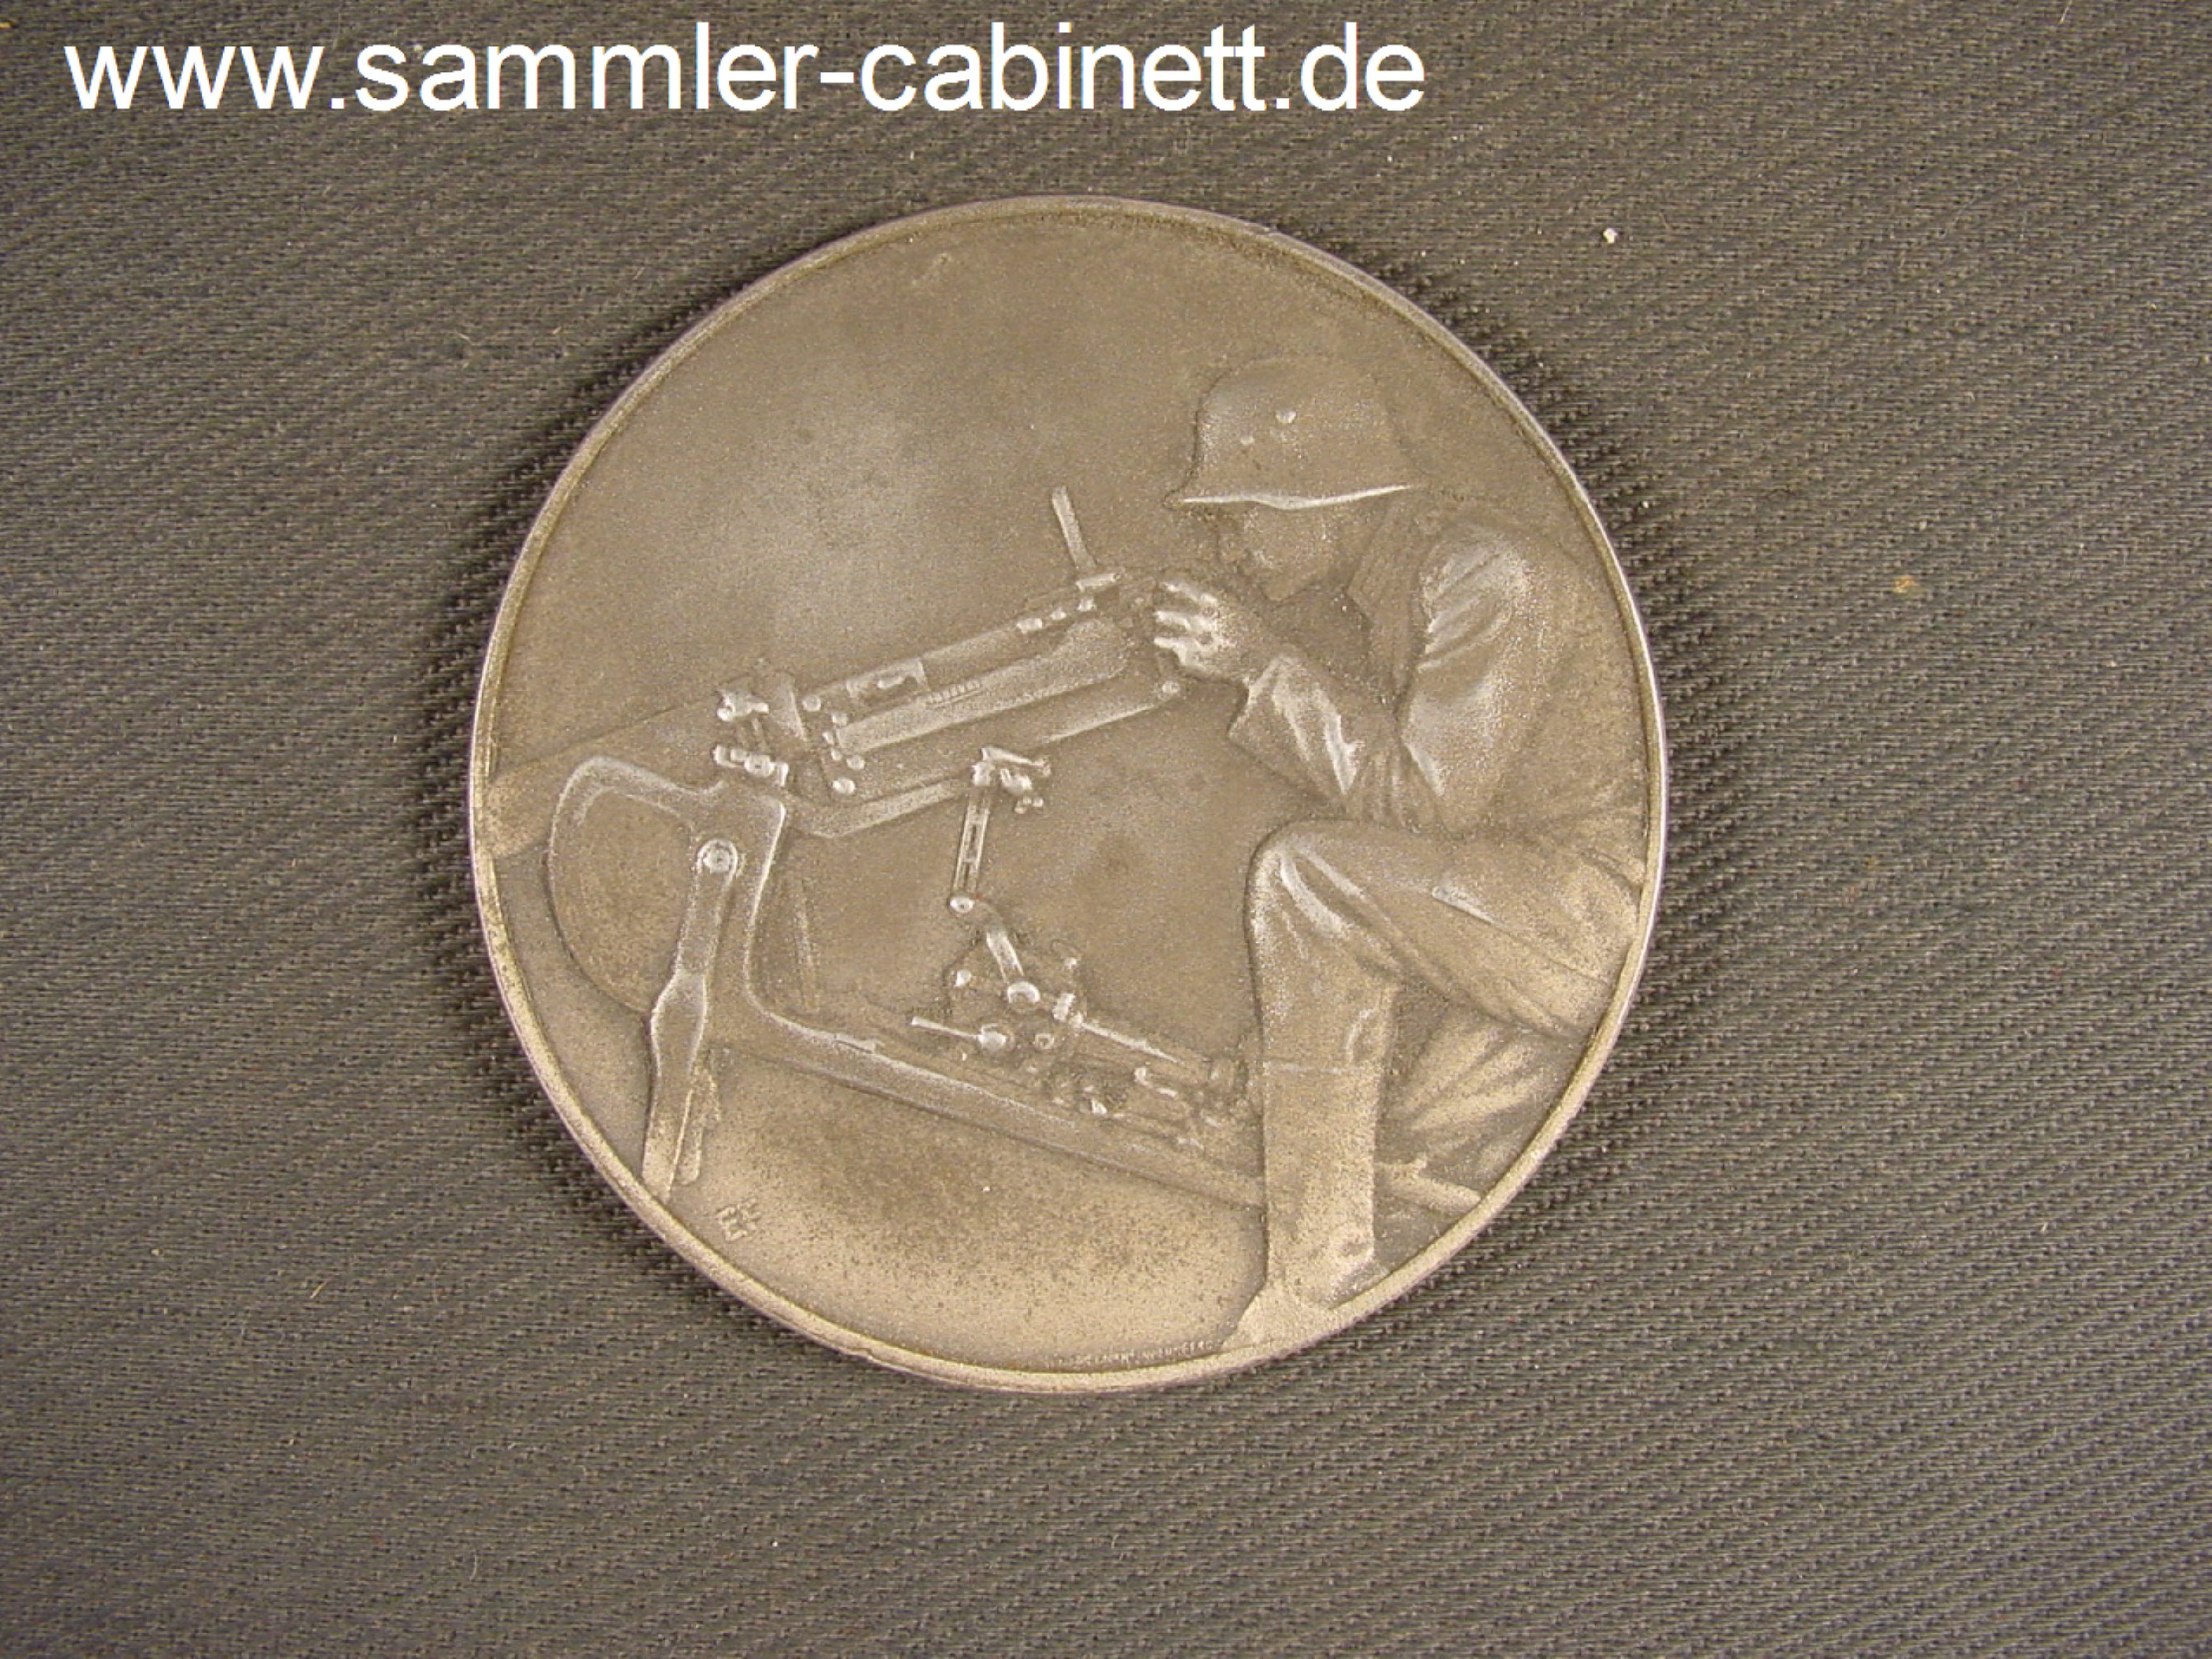 Medaille - PREISRICHTEN - 1938 - ' Dem besten...